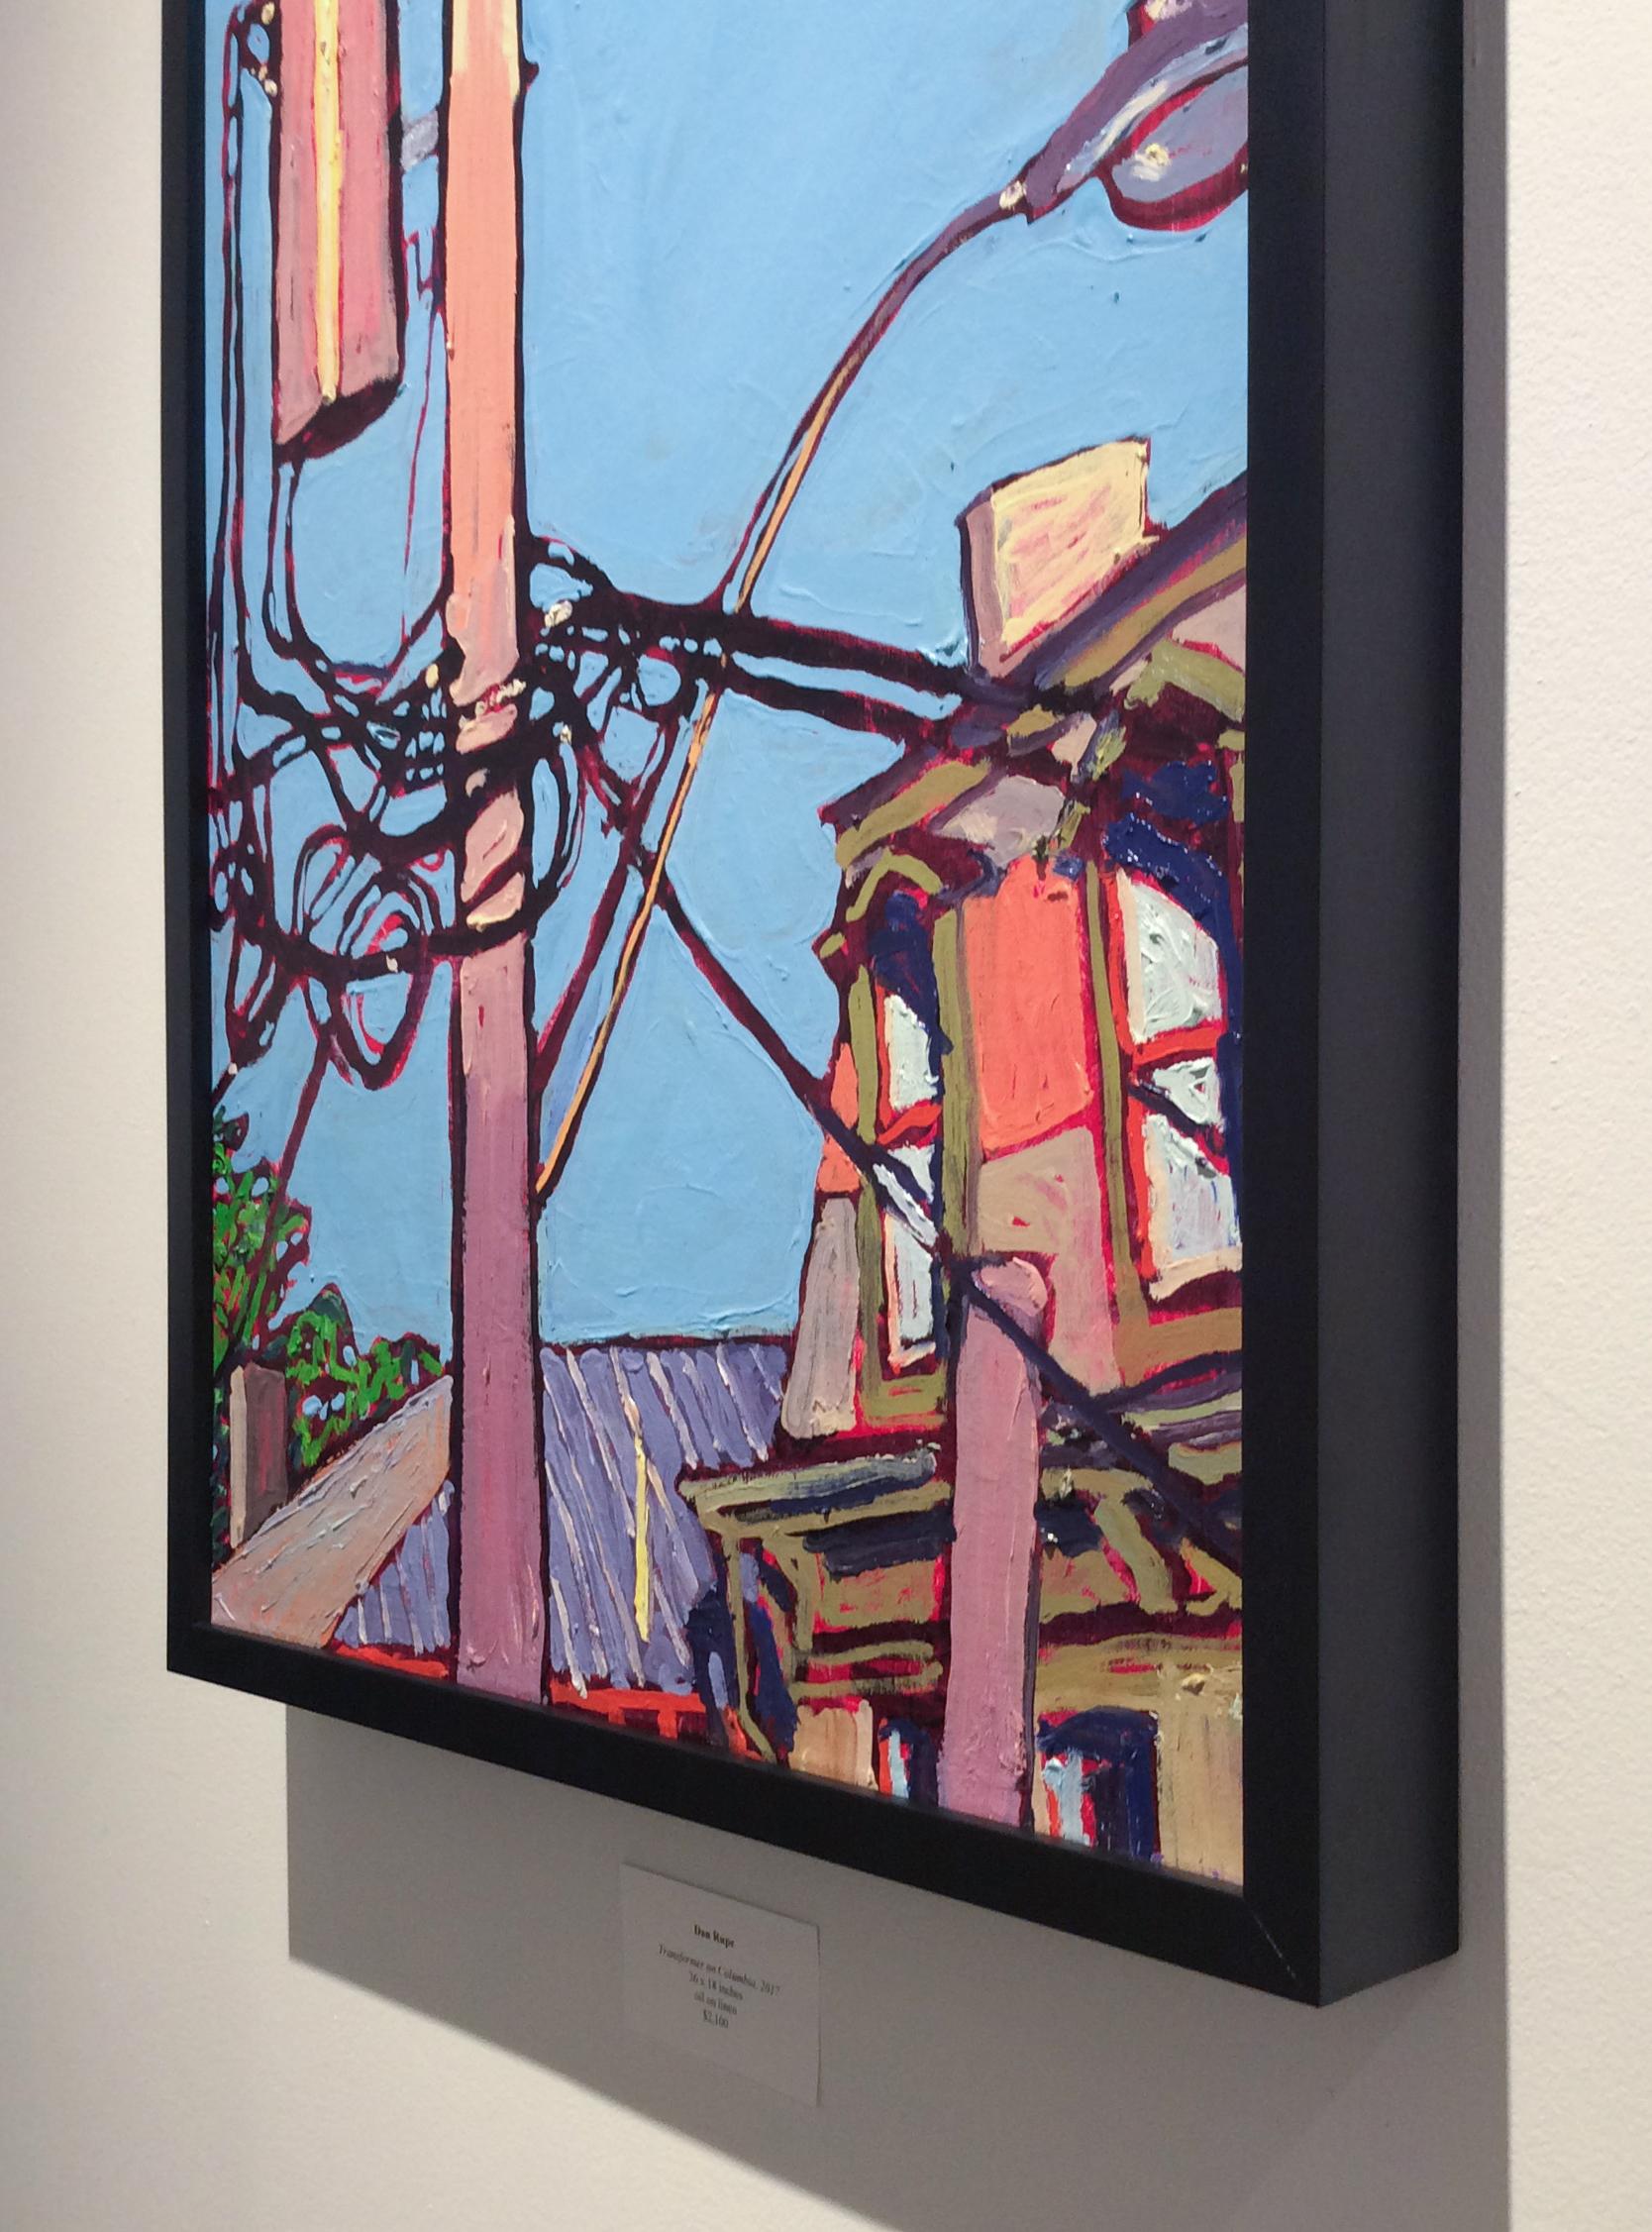 Modernes, fauvistisches Gemälde einer Stadtlandschaft mit einem Dach und einem Strommast vor einem strahlend blauen Himmel
Öl auf Leinen, gerahmt in einem einfachen schwarzen Rahmen, 36 x 18 Zoll
Signiert auf der Rückseite in roter Ölfarbe

Dieses